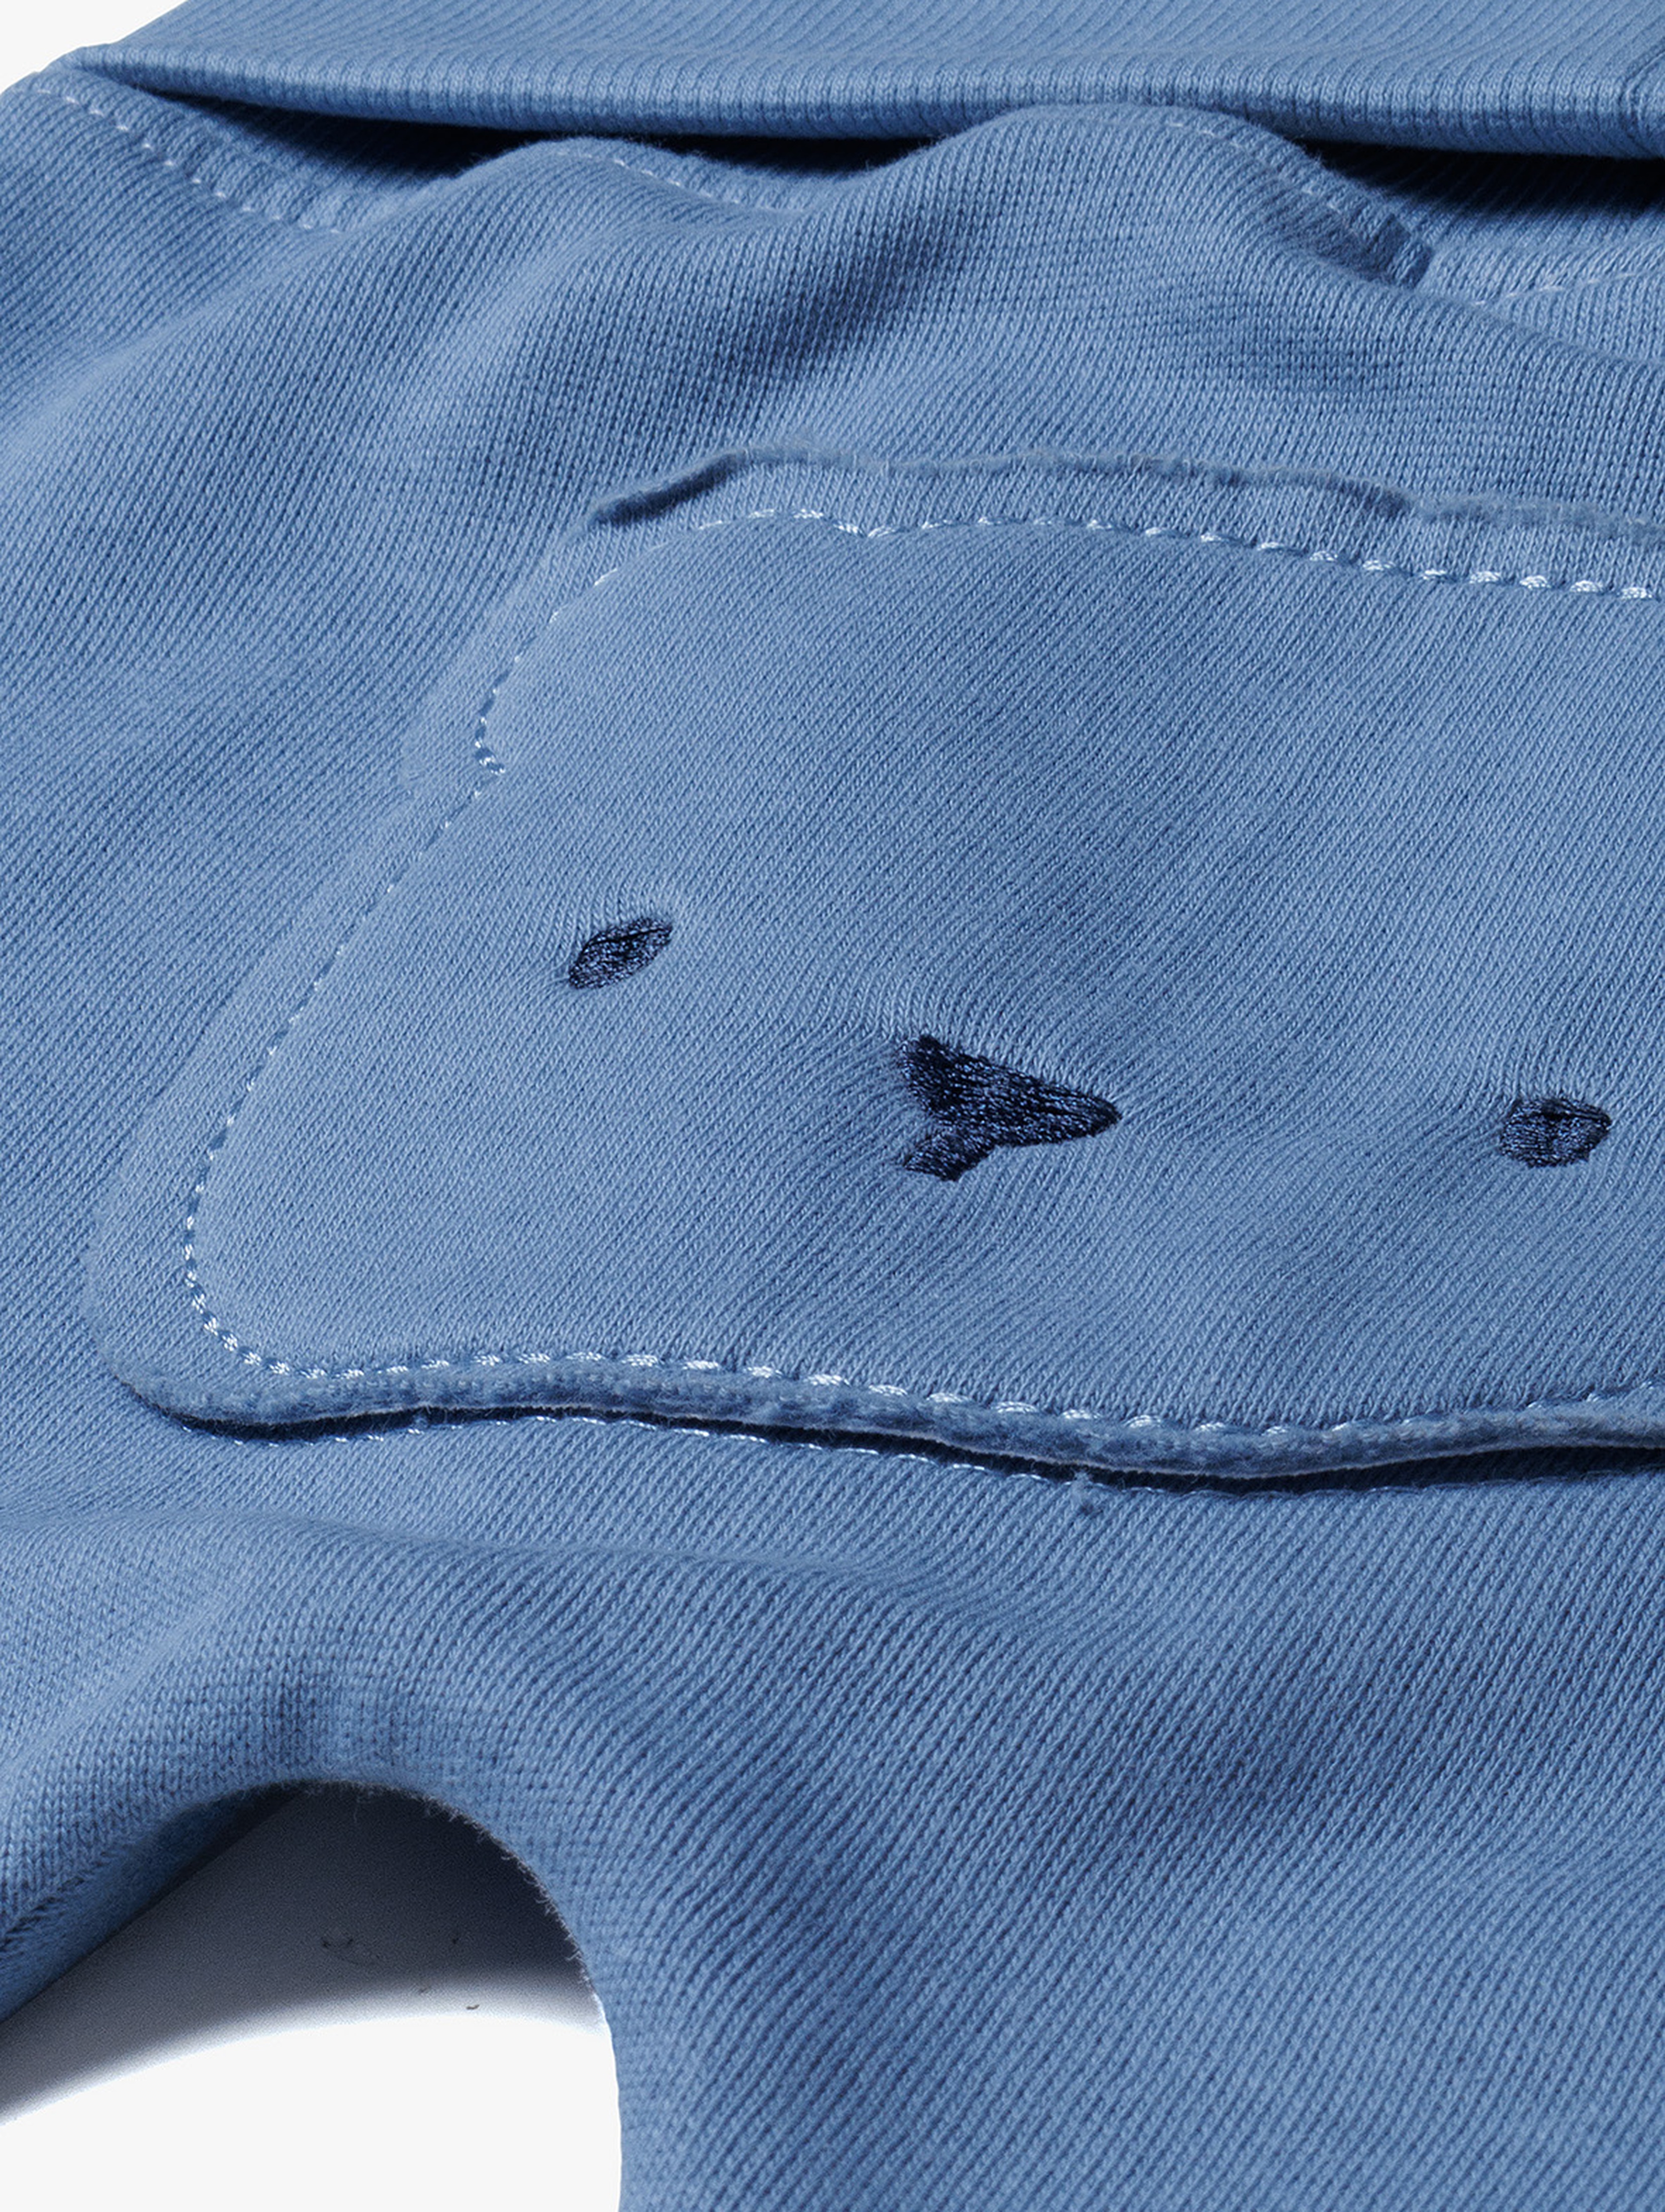 Ciepłe bawełniane spodnie niemowlęce z misiem - niebieskie